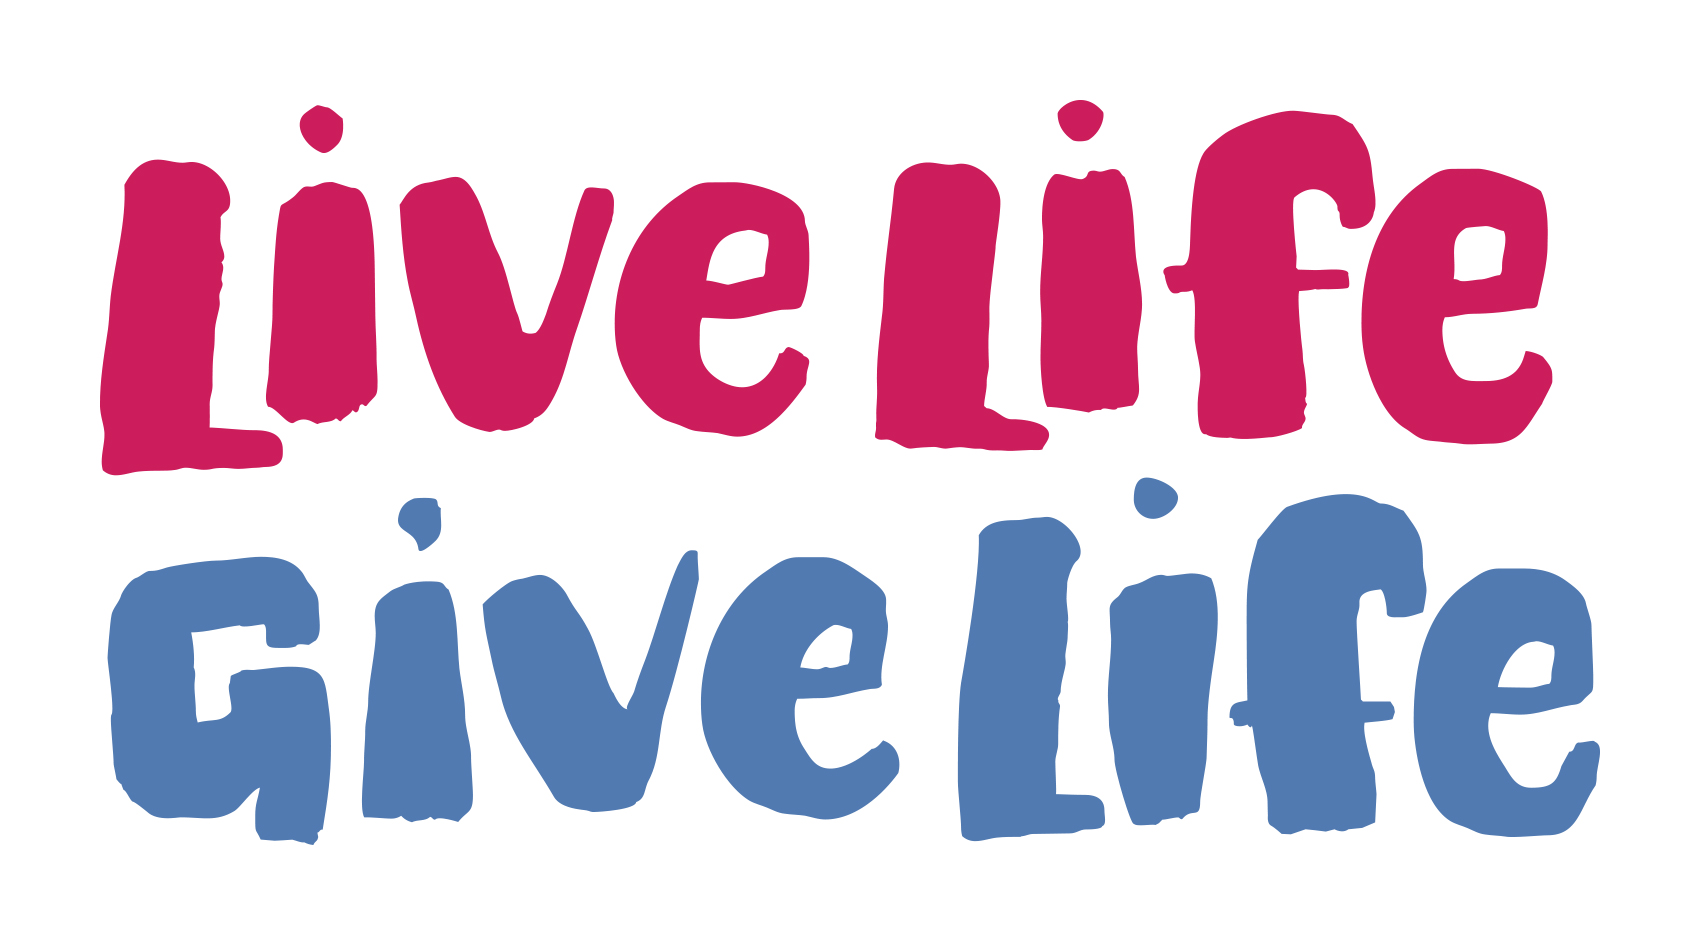 Live Life Give Life